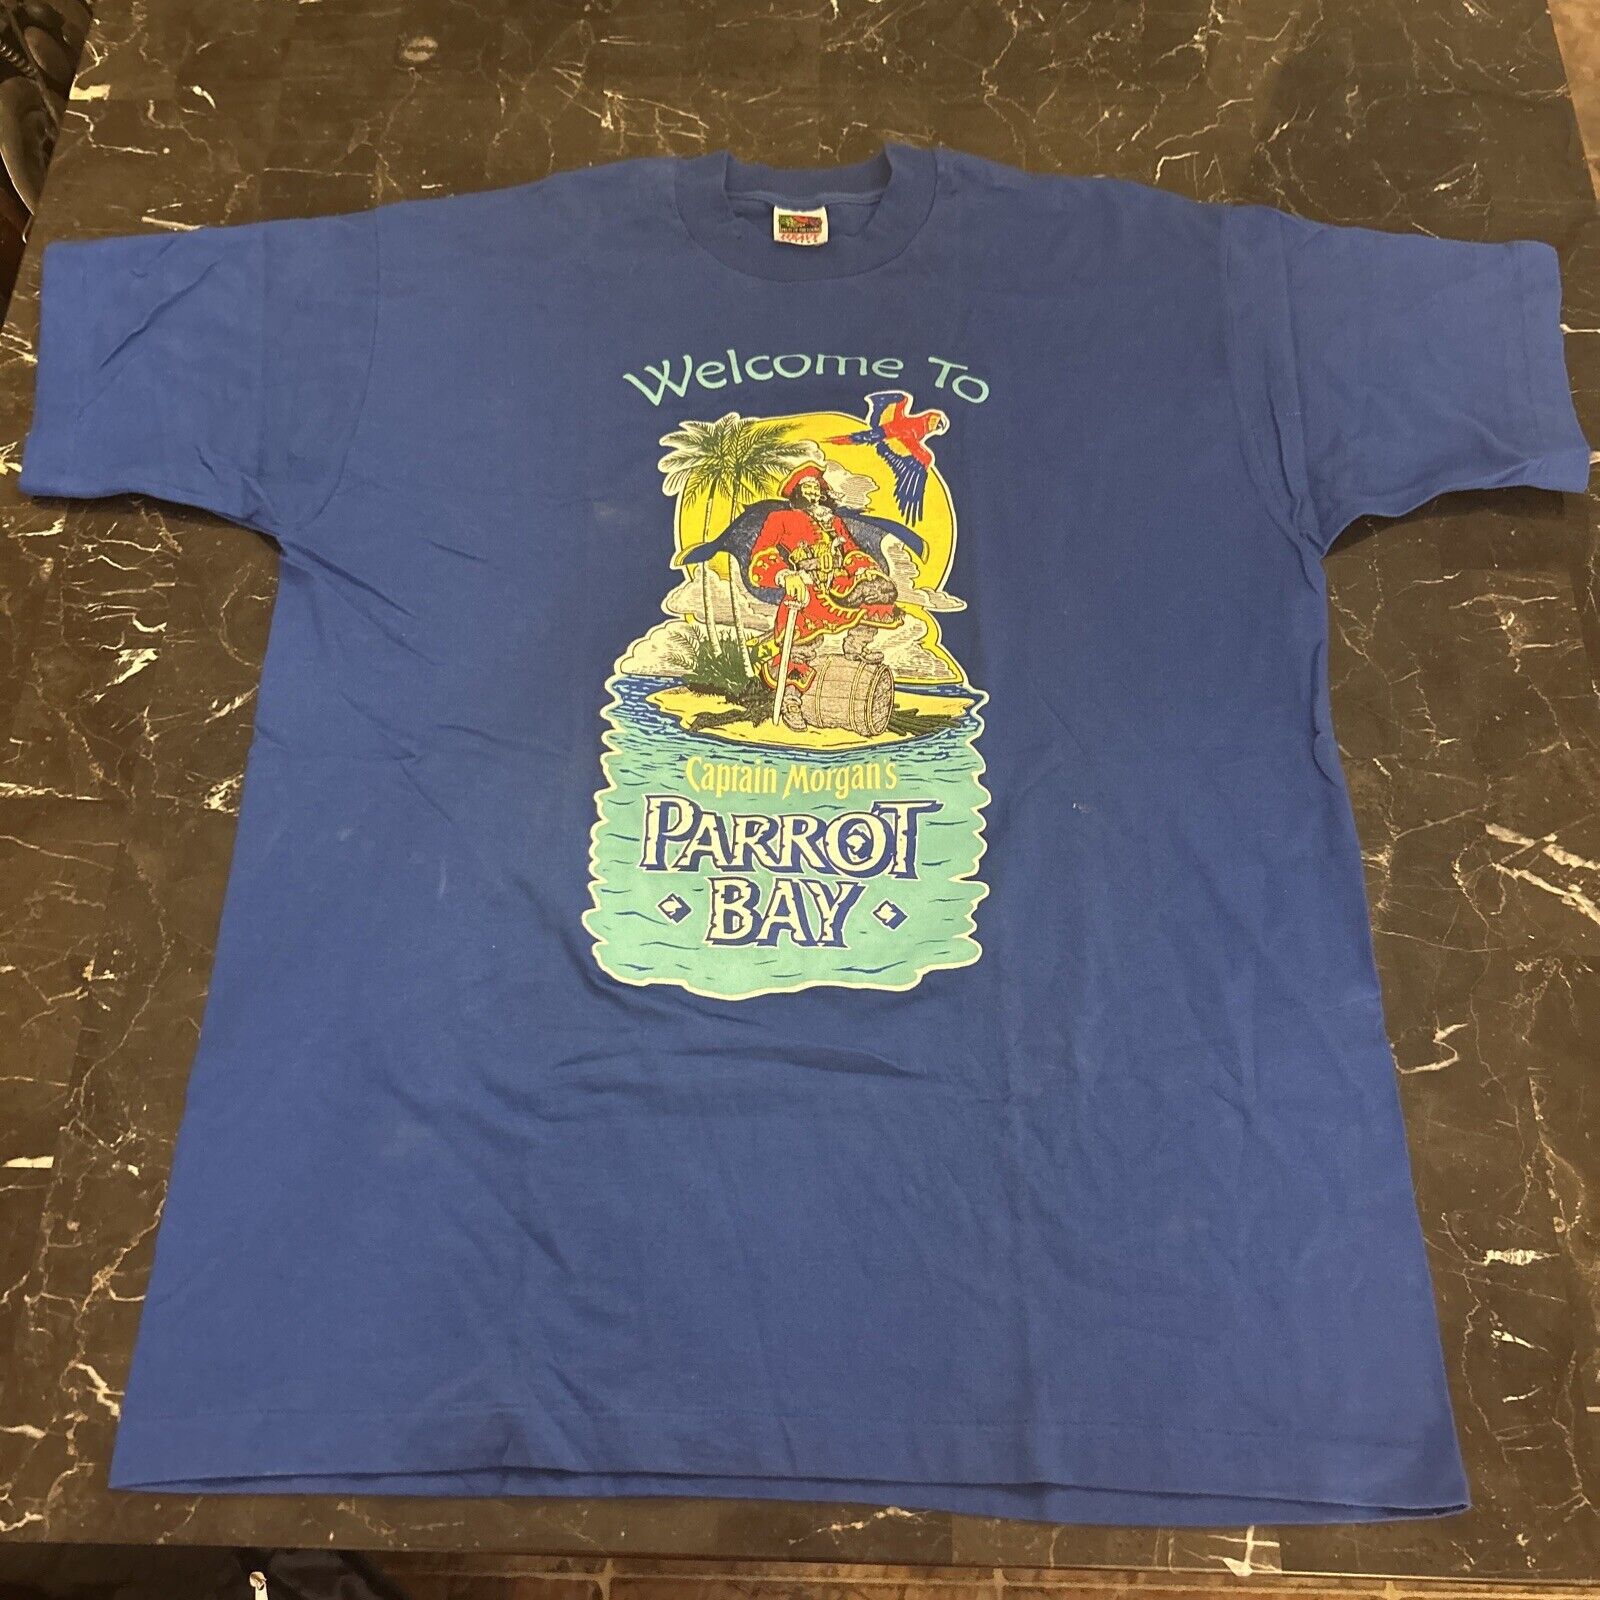 Vintage Hanes Label - Captain Morgan’s PARROT BAY (XL) T-Shirt Single Stitch